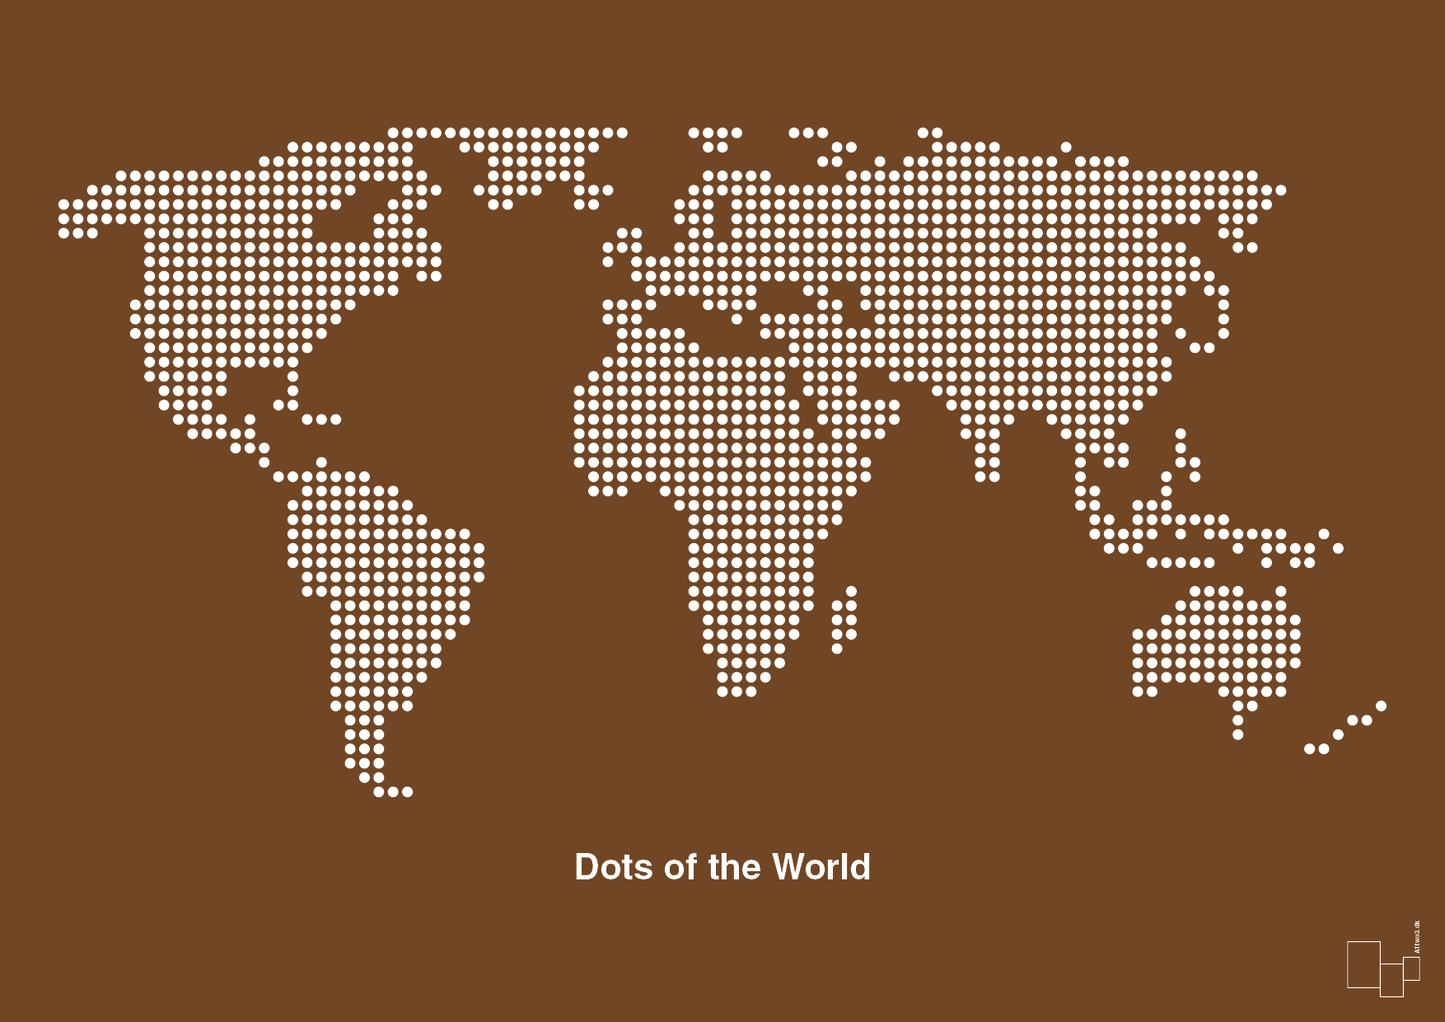 verdenskort - Plakat med Grafik i Dark Brown